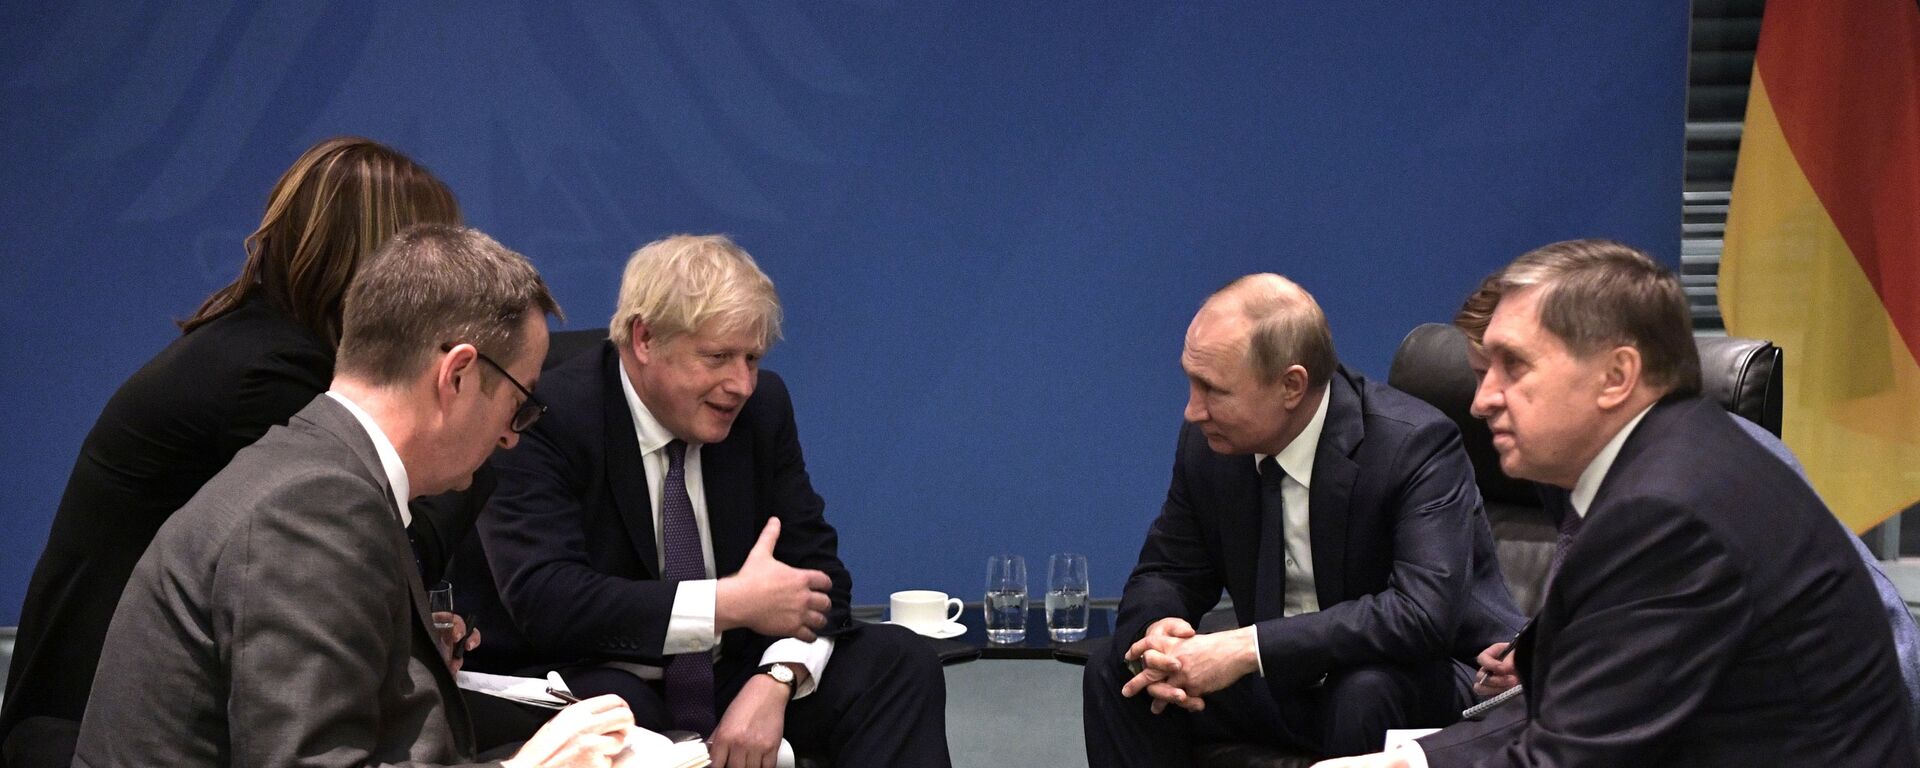 Cuộc gặp giữa hai ông Putin và Johnson ở Berlin. - Sputnik Việt Nam, 1920, 26.10.2021